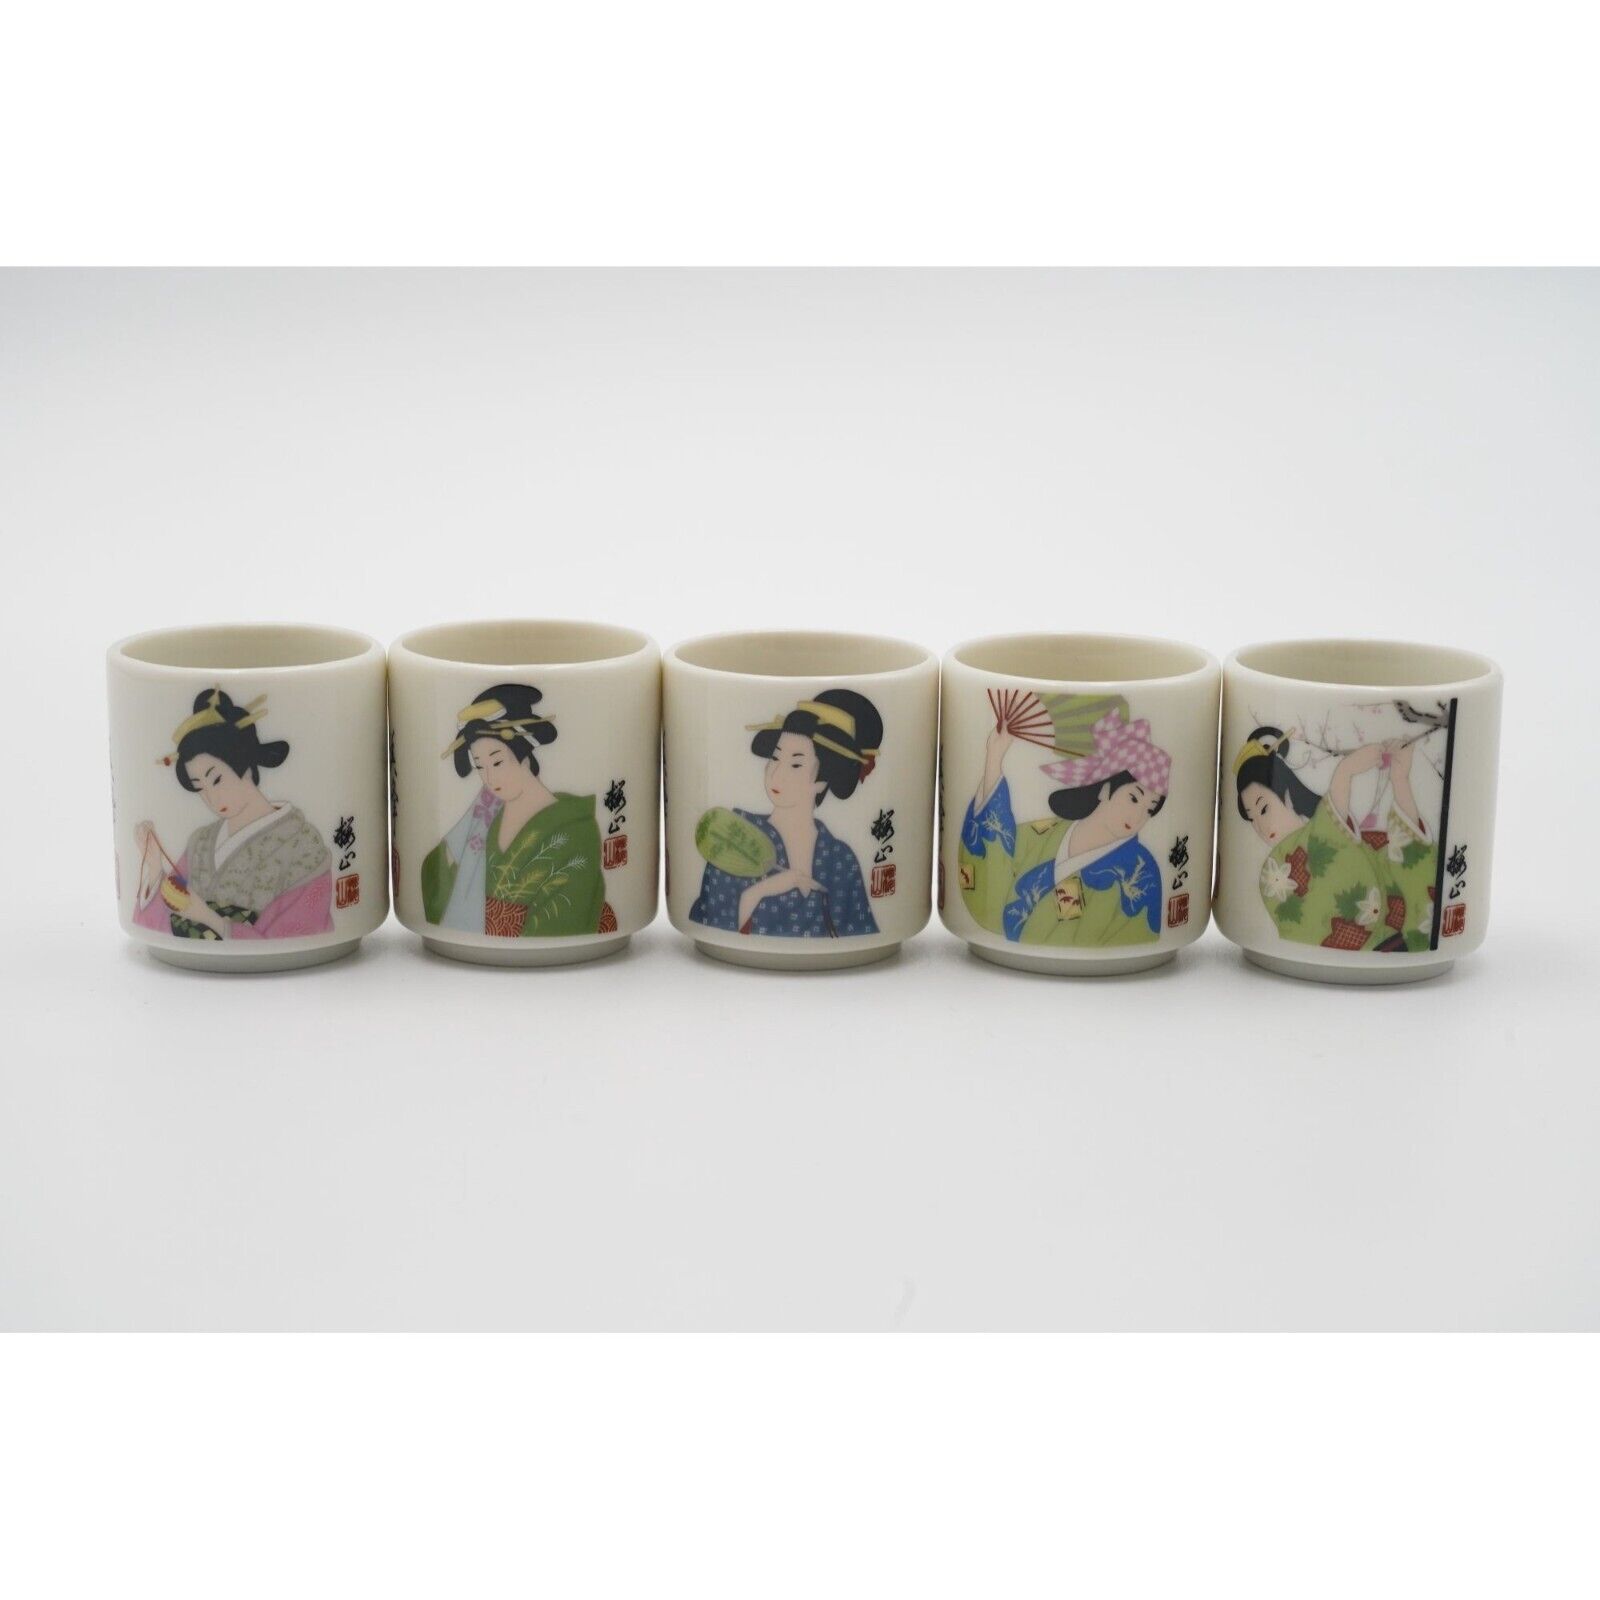 Vintage Japanese Porcelain Geisha Sake Cups Set of 5